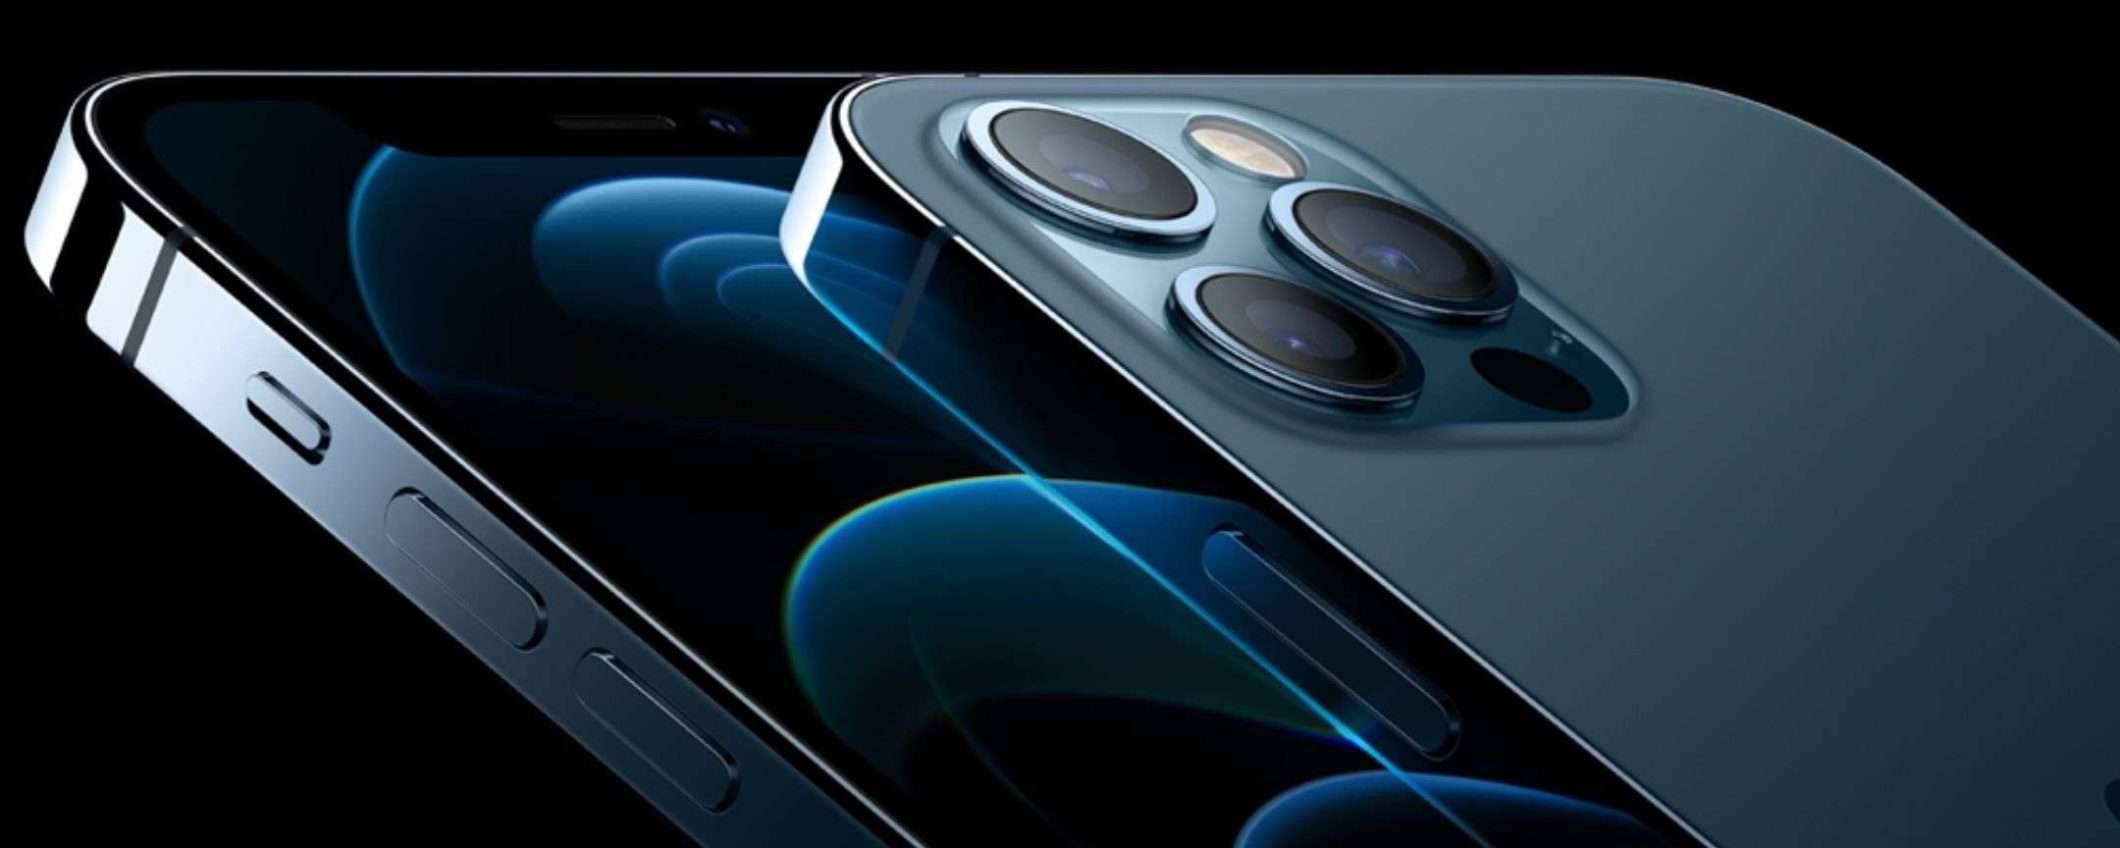 iPhone 12 Pro Max in offerta a 489€, ricondizionato e garantito Amazon